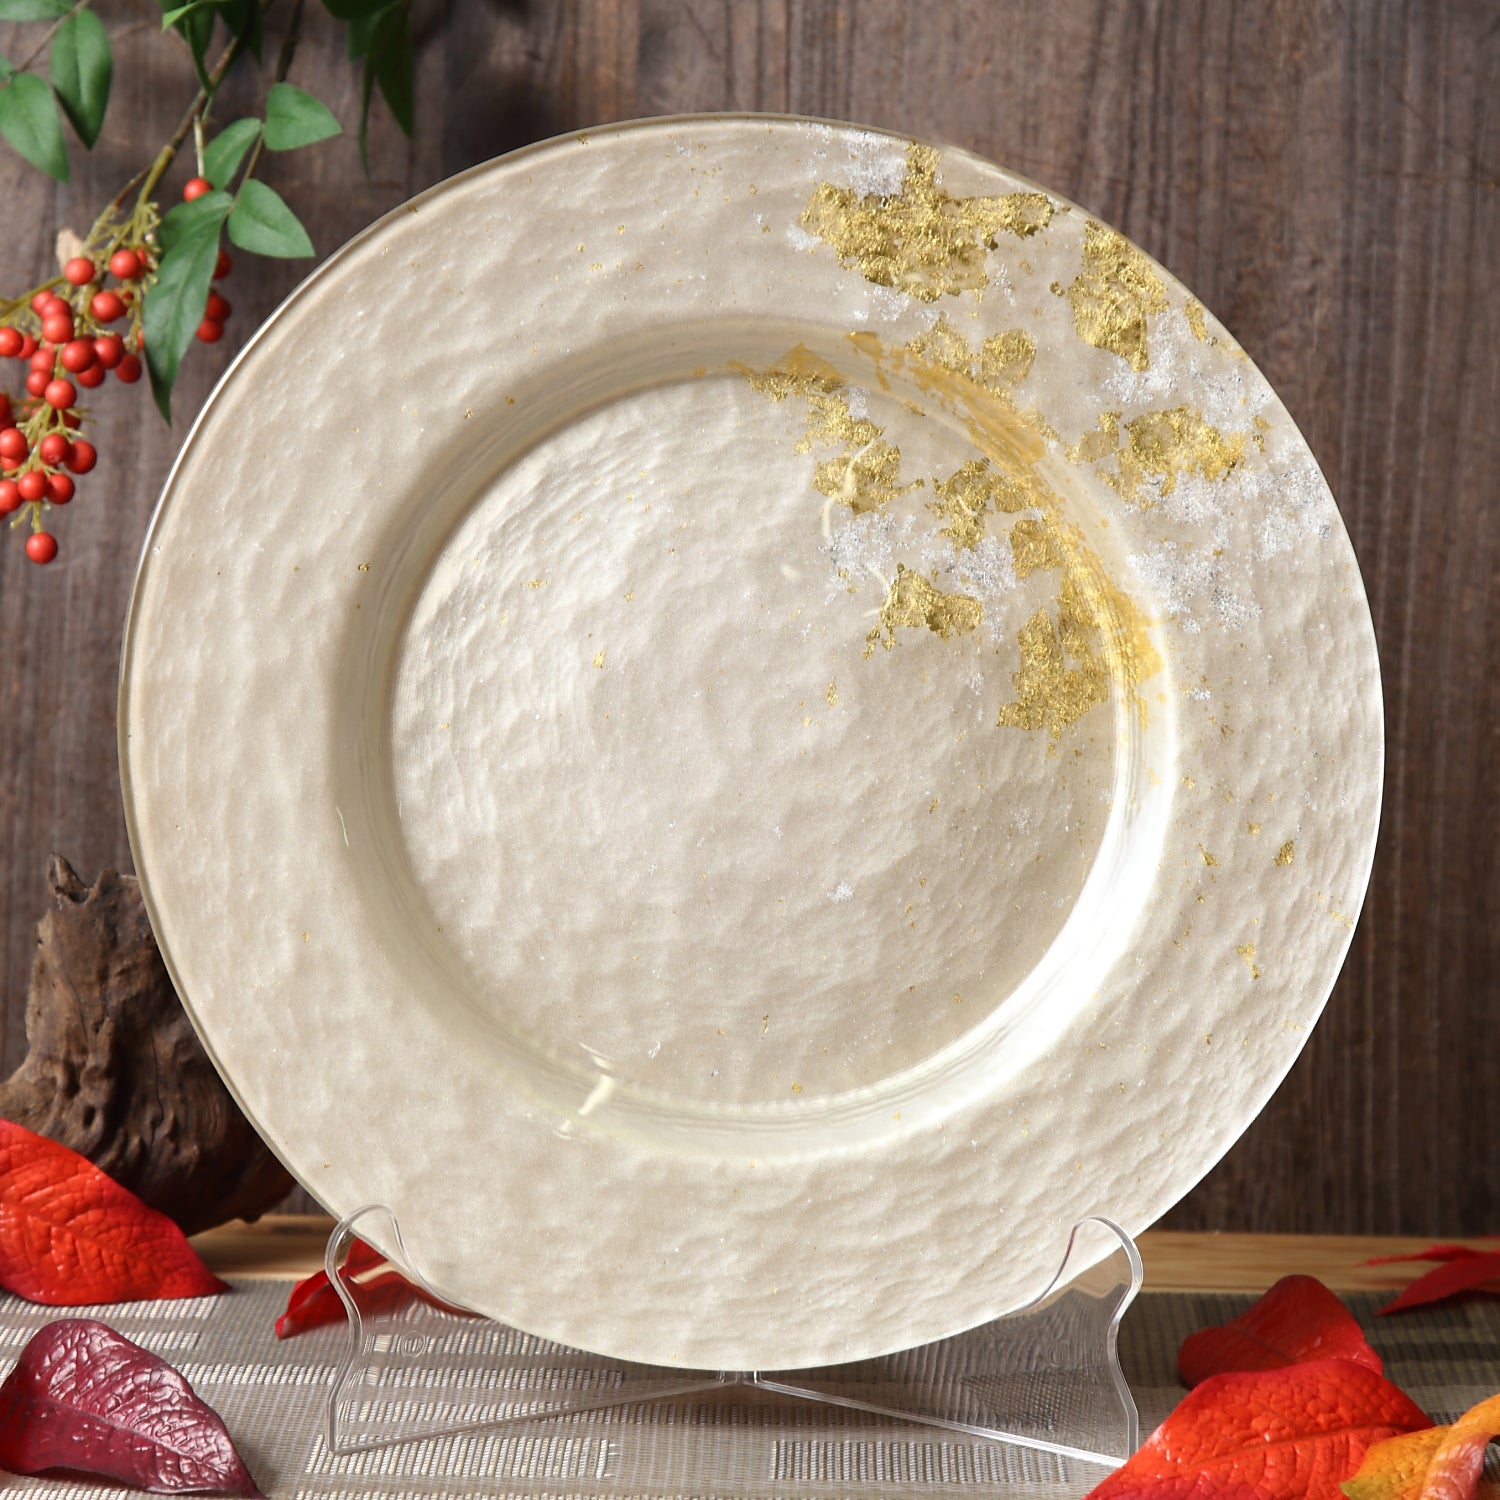 Syosaku Japanese Urushi Glass Dinner Plate 12.5-inch (32cm) Majestic White with Gold Leaf, Dishwasher Safe